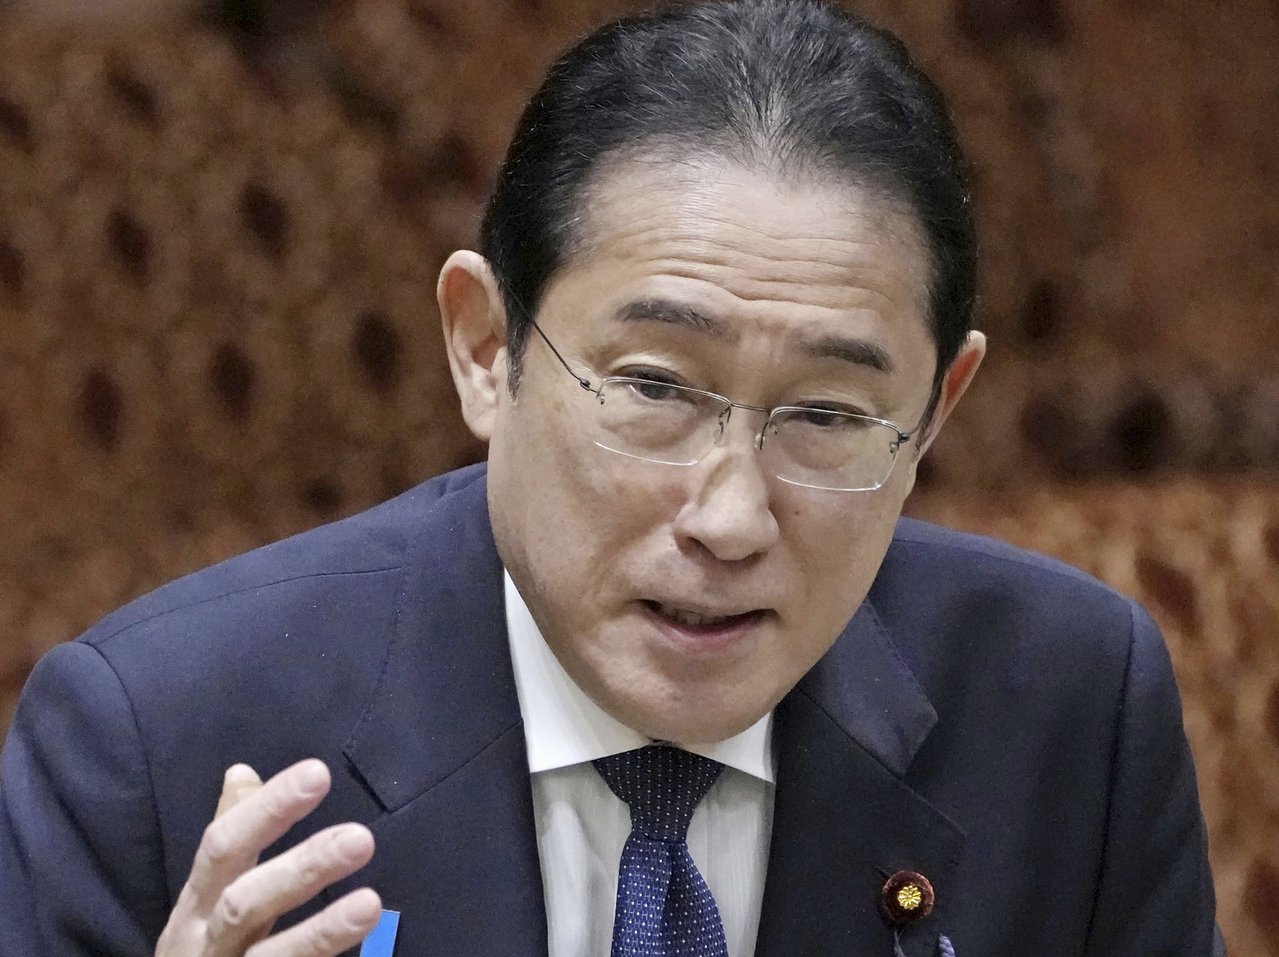 日本首相岸田文雄今天在首相官邸接受日本经济新闻专访时，表达了访问北韩的意愿。他说，「不要说是今年，必须尽可能早日实现」。美联社